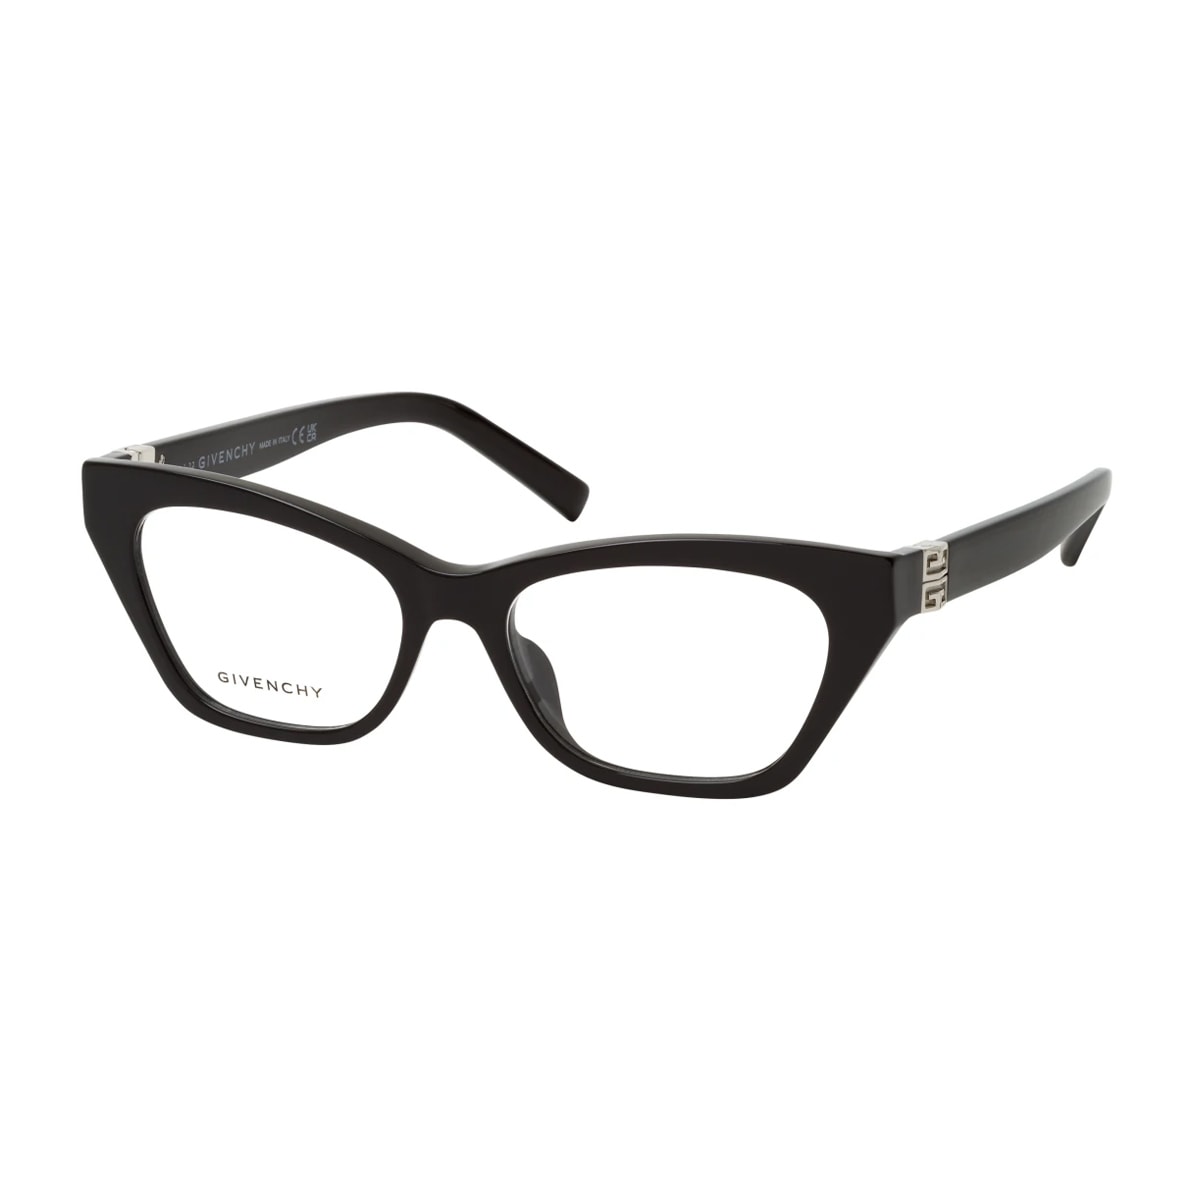 Givenchy Eyewear Gv50015i Glasses